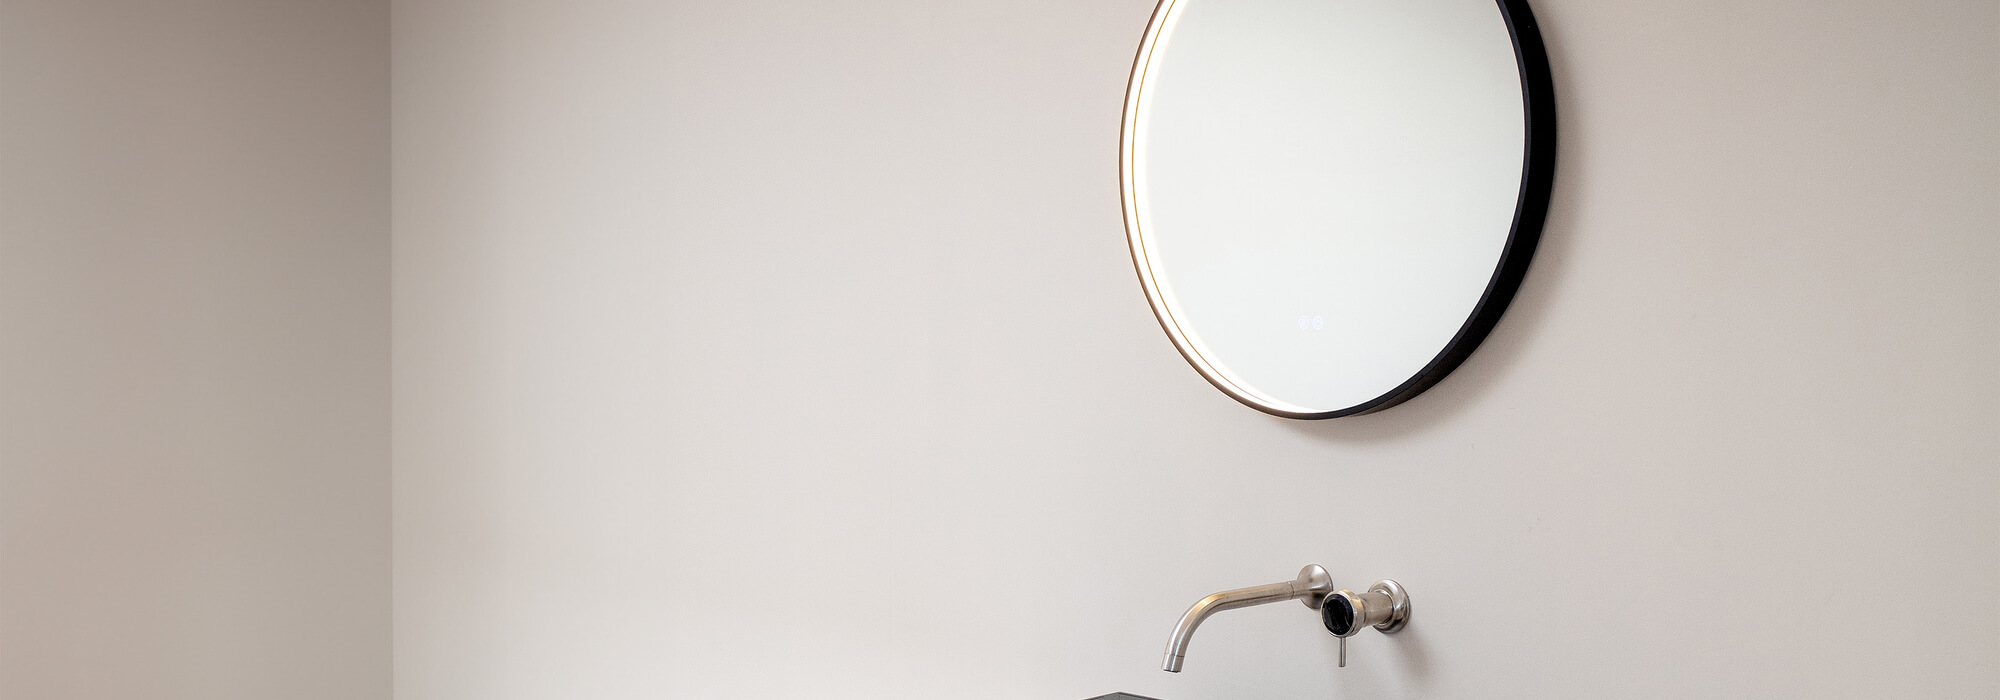 Die Spiegelserien Lumina Glow und Lumina Style von SPRINZ mit einer jeweils kreisrunden und rechteckigen Variante, verknüpfen funktional gestaltetes Licht mit einem klaren Designansatz.